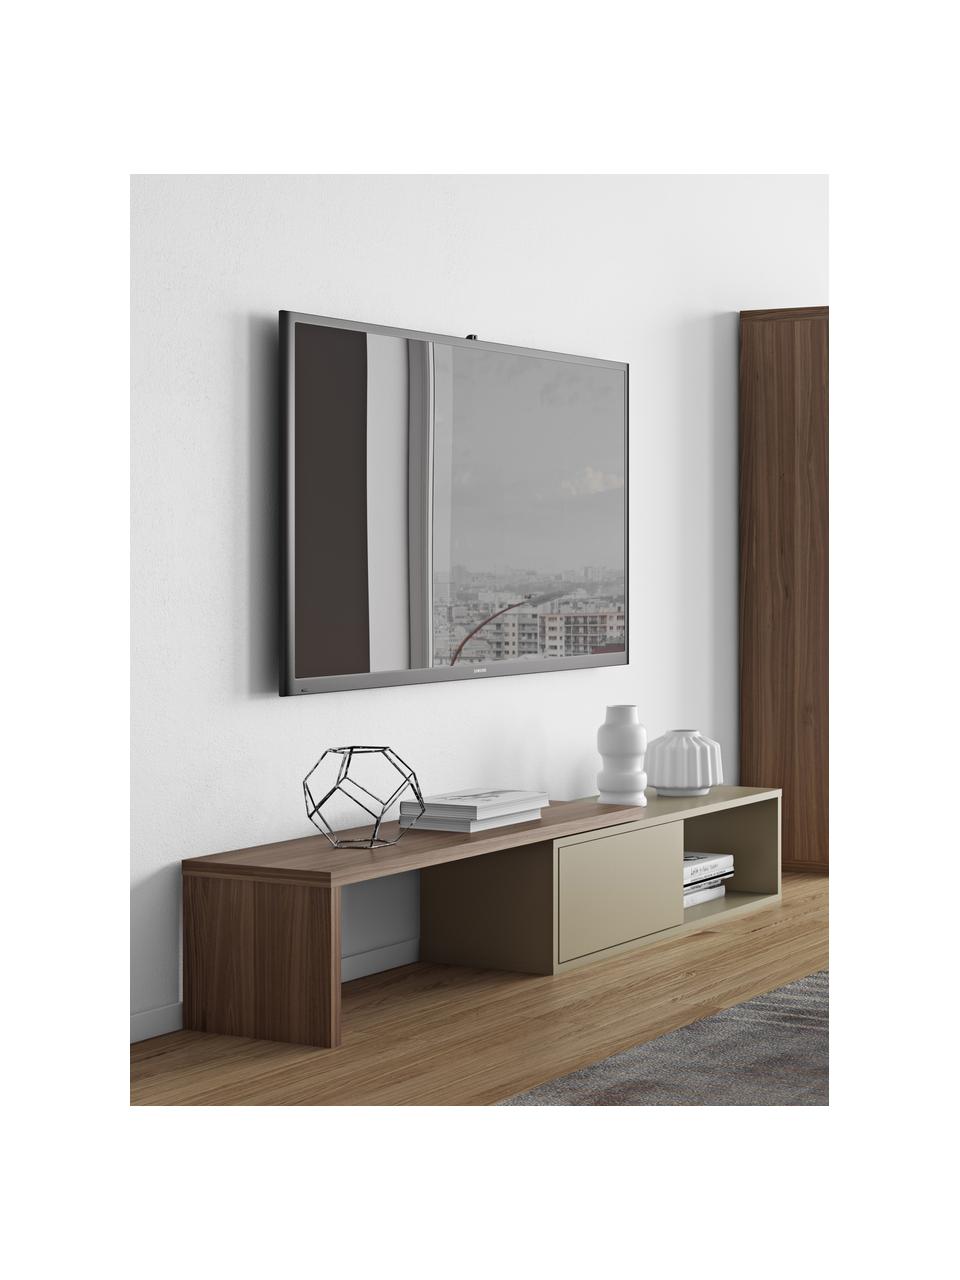 Uittrekbare tv-meubel Lieke met schuifdeur, Walnoothout, grijs, B 110-203 x H 32 cm